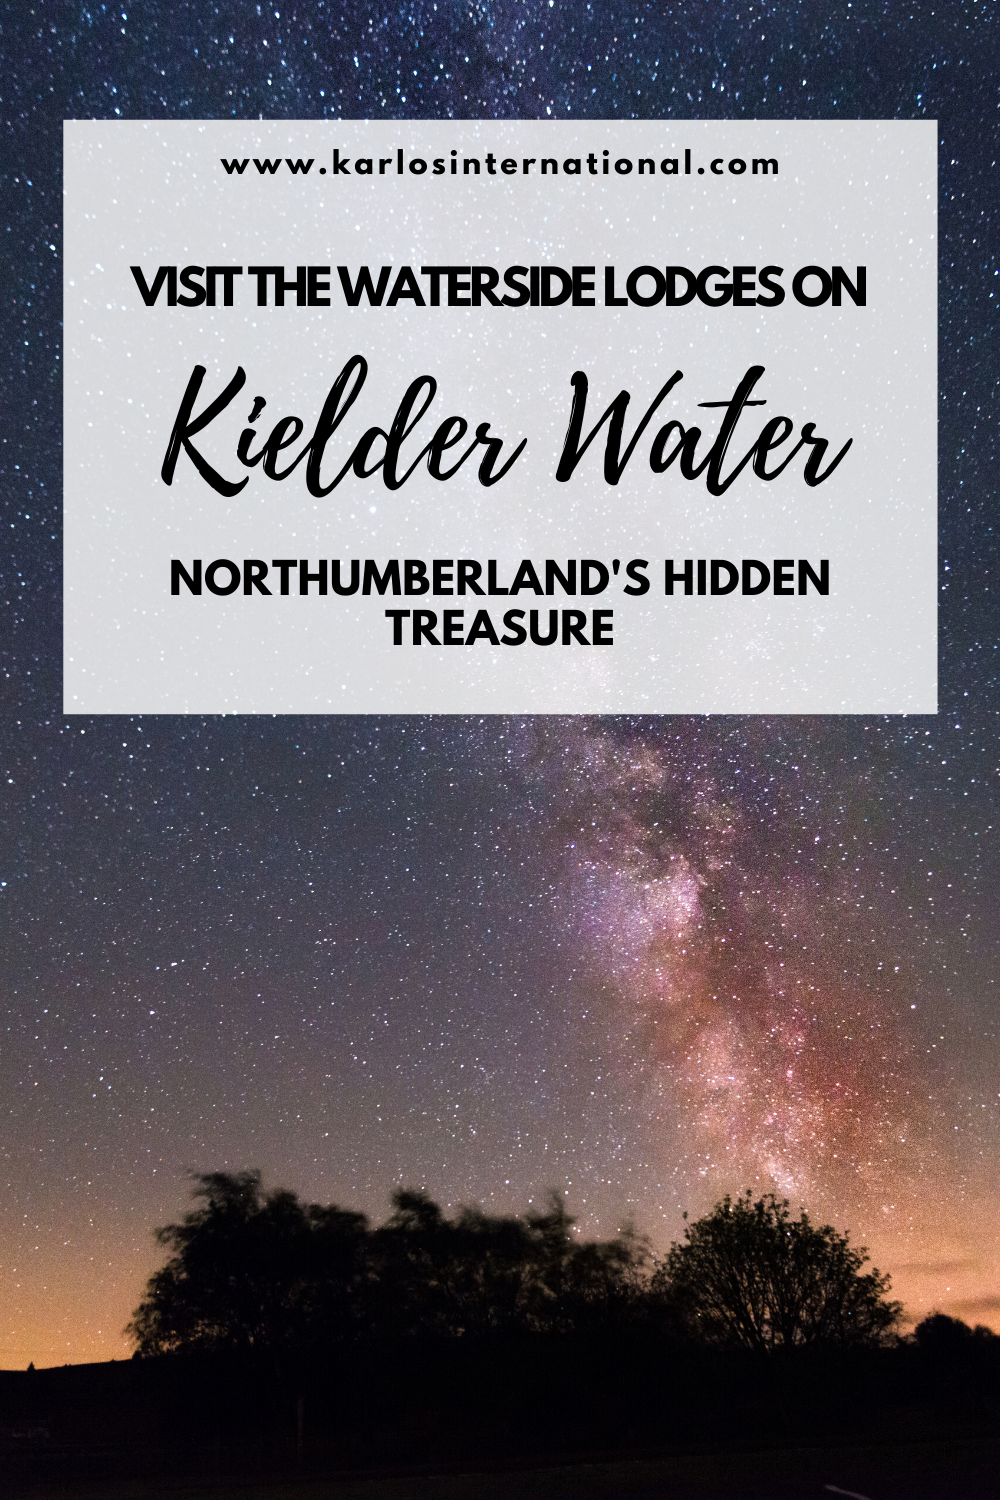 Visit the waterside lodges on Kielder Water - Northumberland's secret hideaway